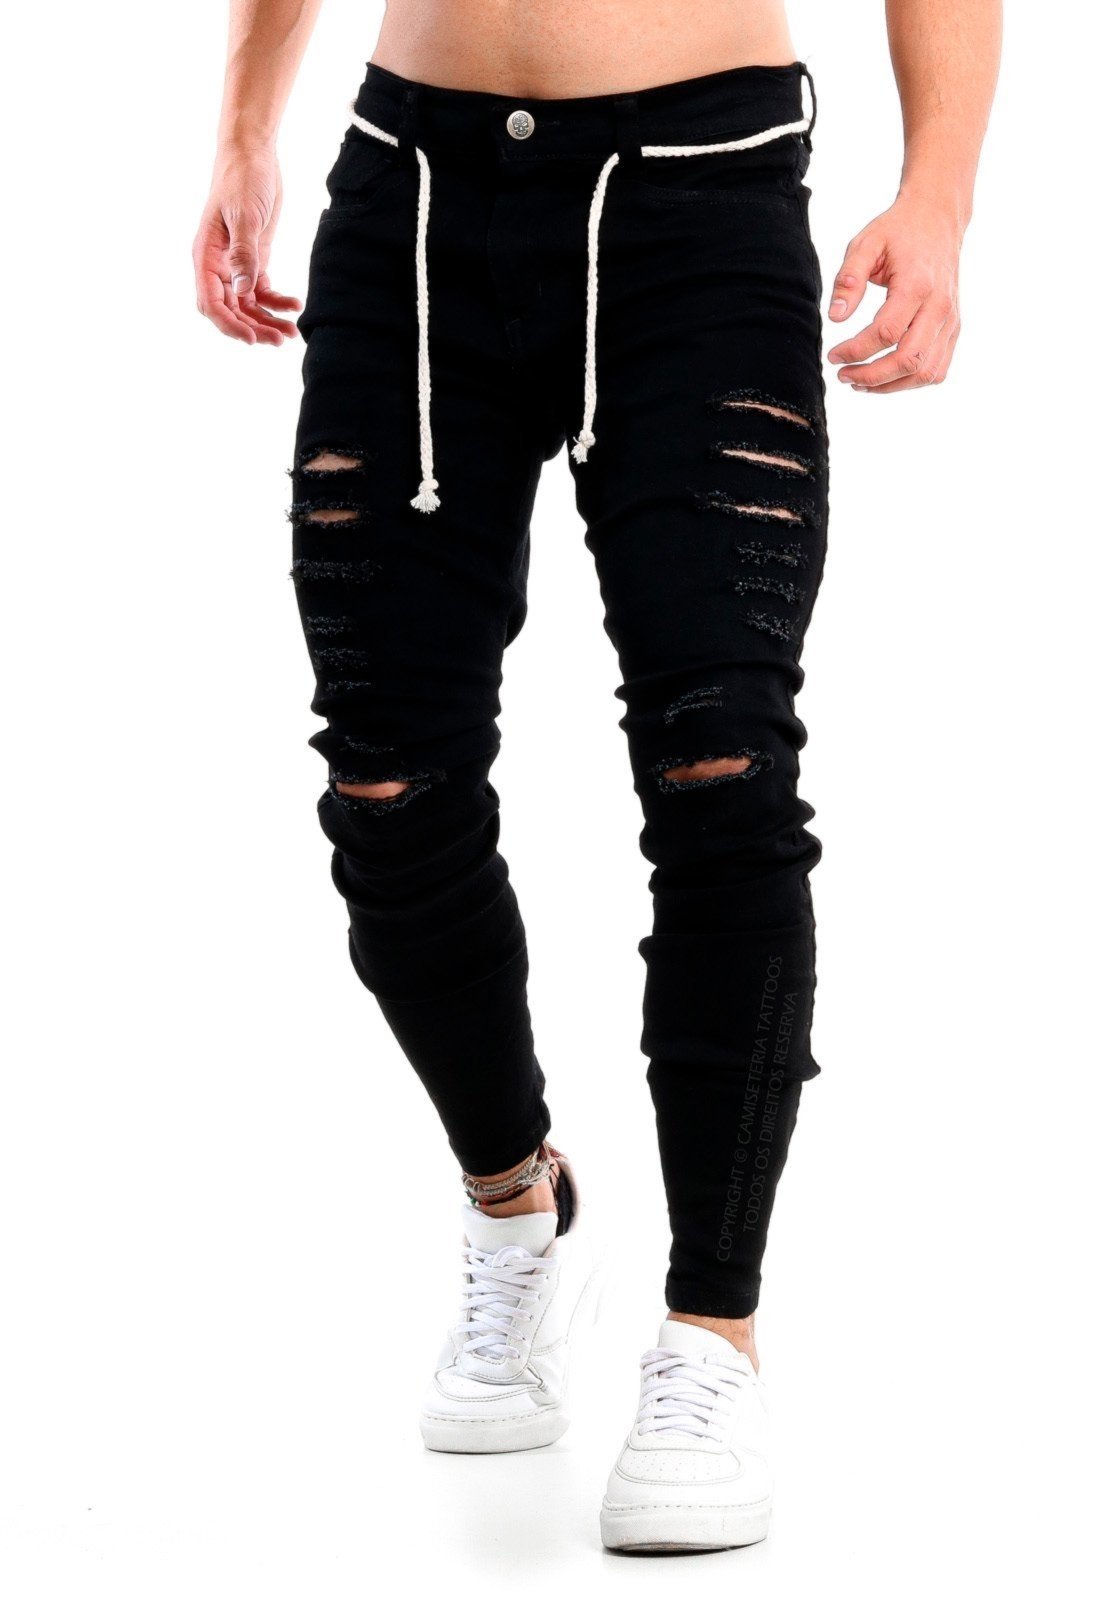 calça preta masculina jeans